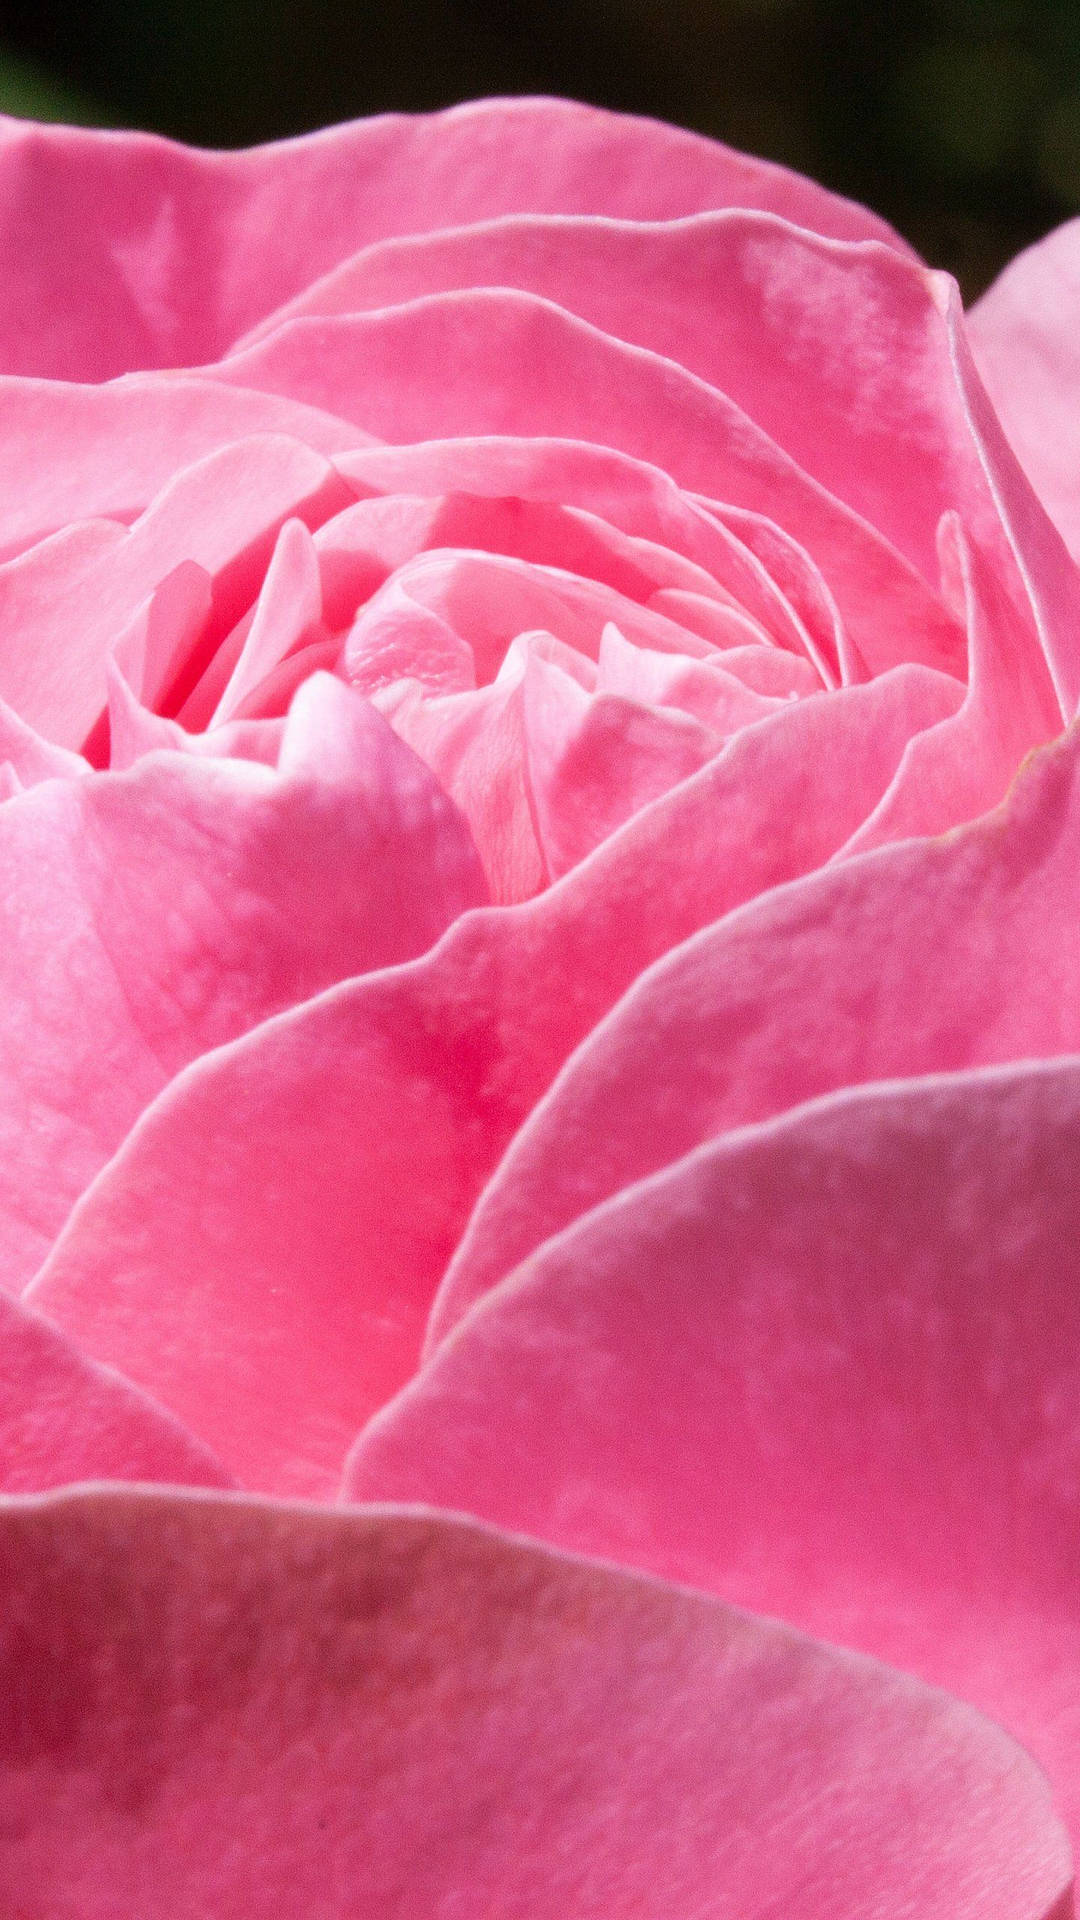 Pink Rose Iphone Vibrant Petals